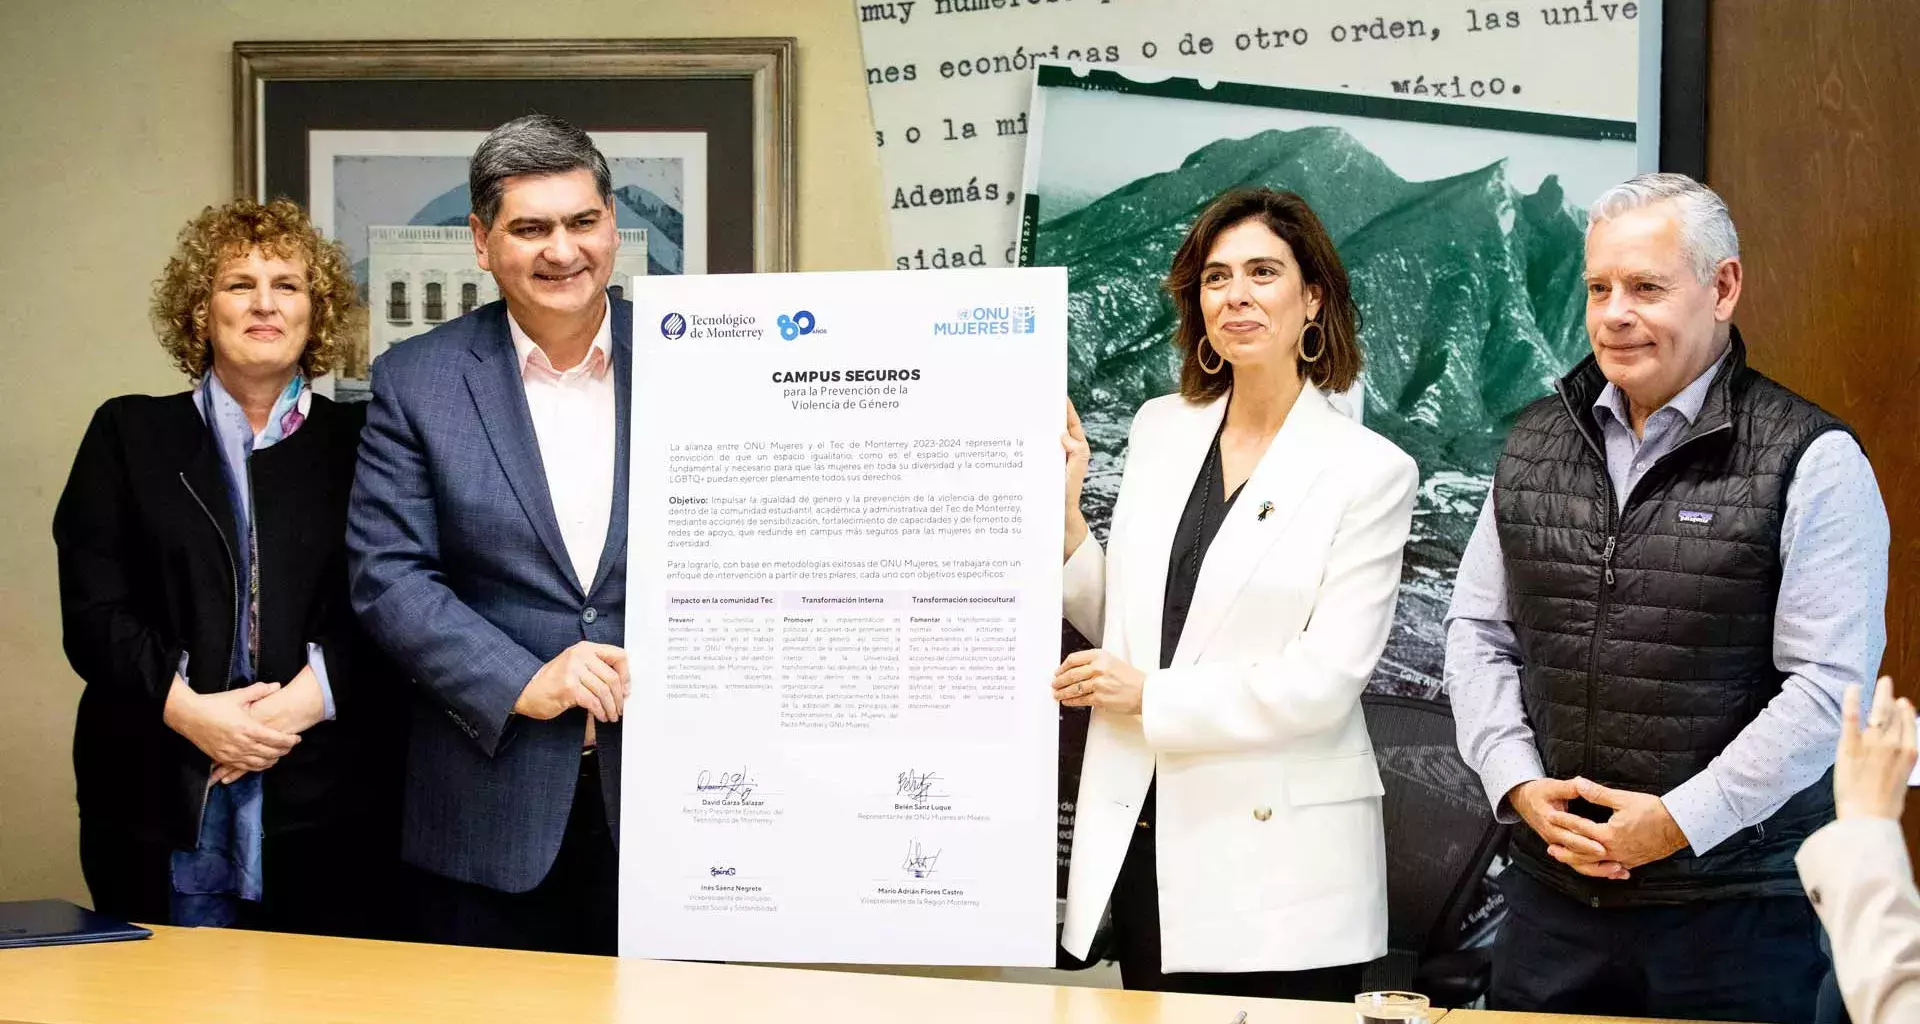 Tec de Monterrey and UN join forces against gender violence